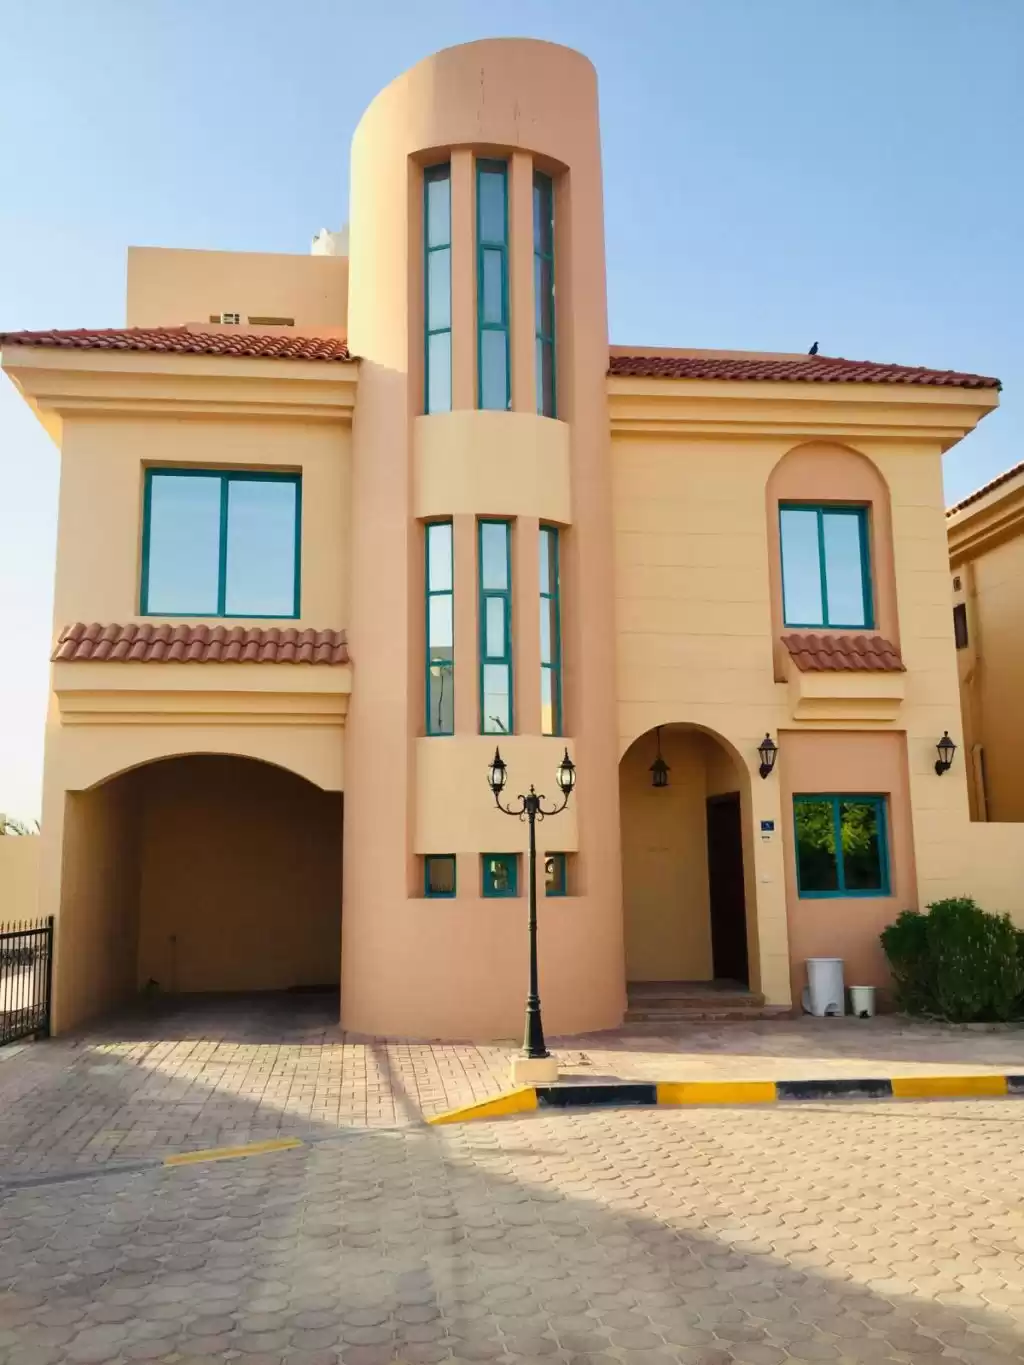 Résidentiel Propriété prête 5 chambres U / f Villa autonome  a louer au Al-Sadd , Doha #10010 - 1  image 